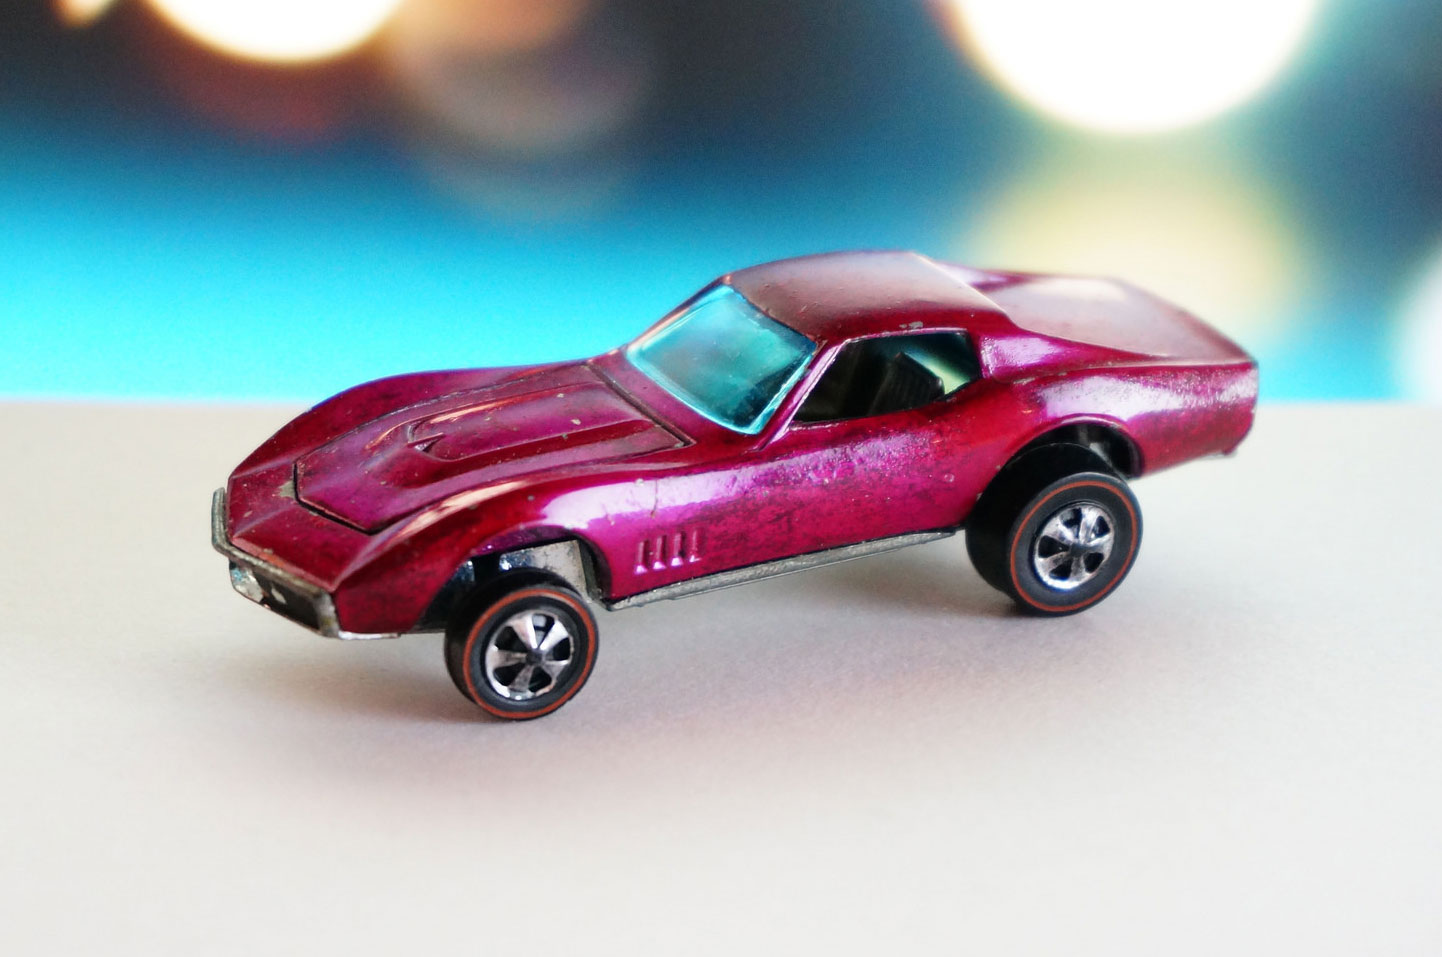 Hot Wheels Redline Rare Creamy Pink Custom Corvette HK